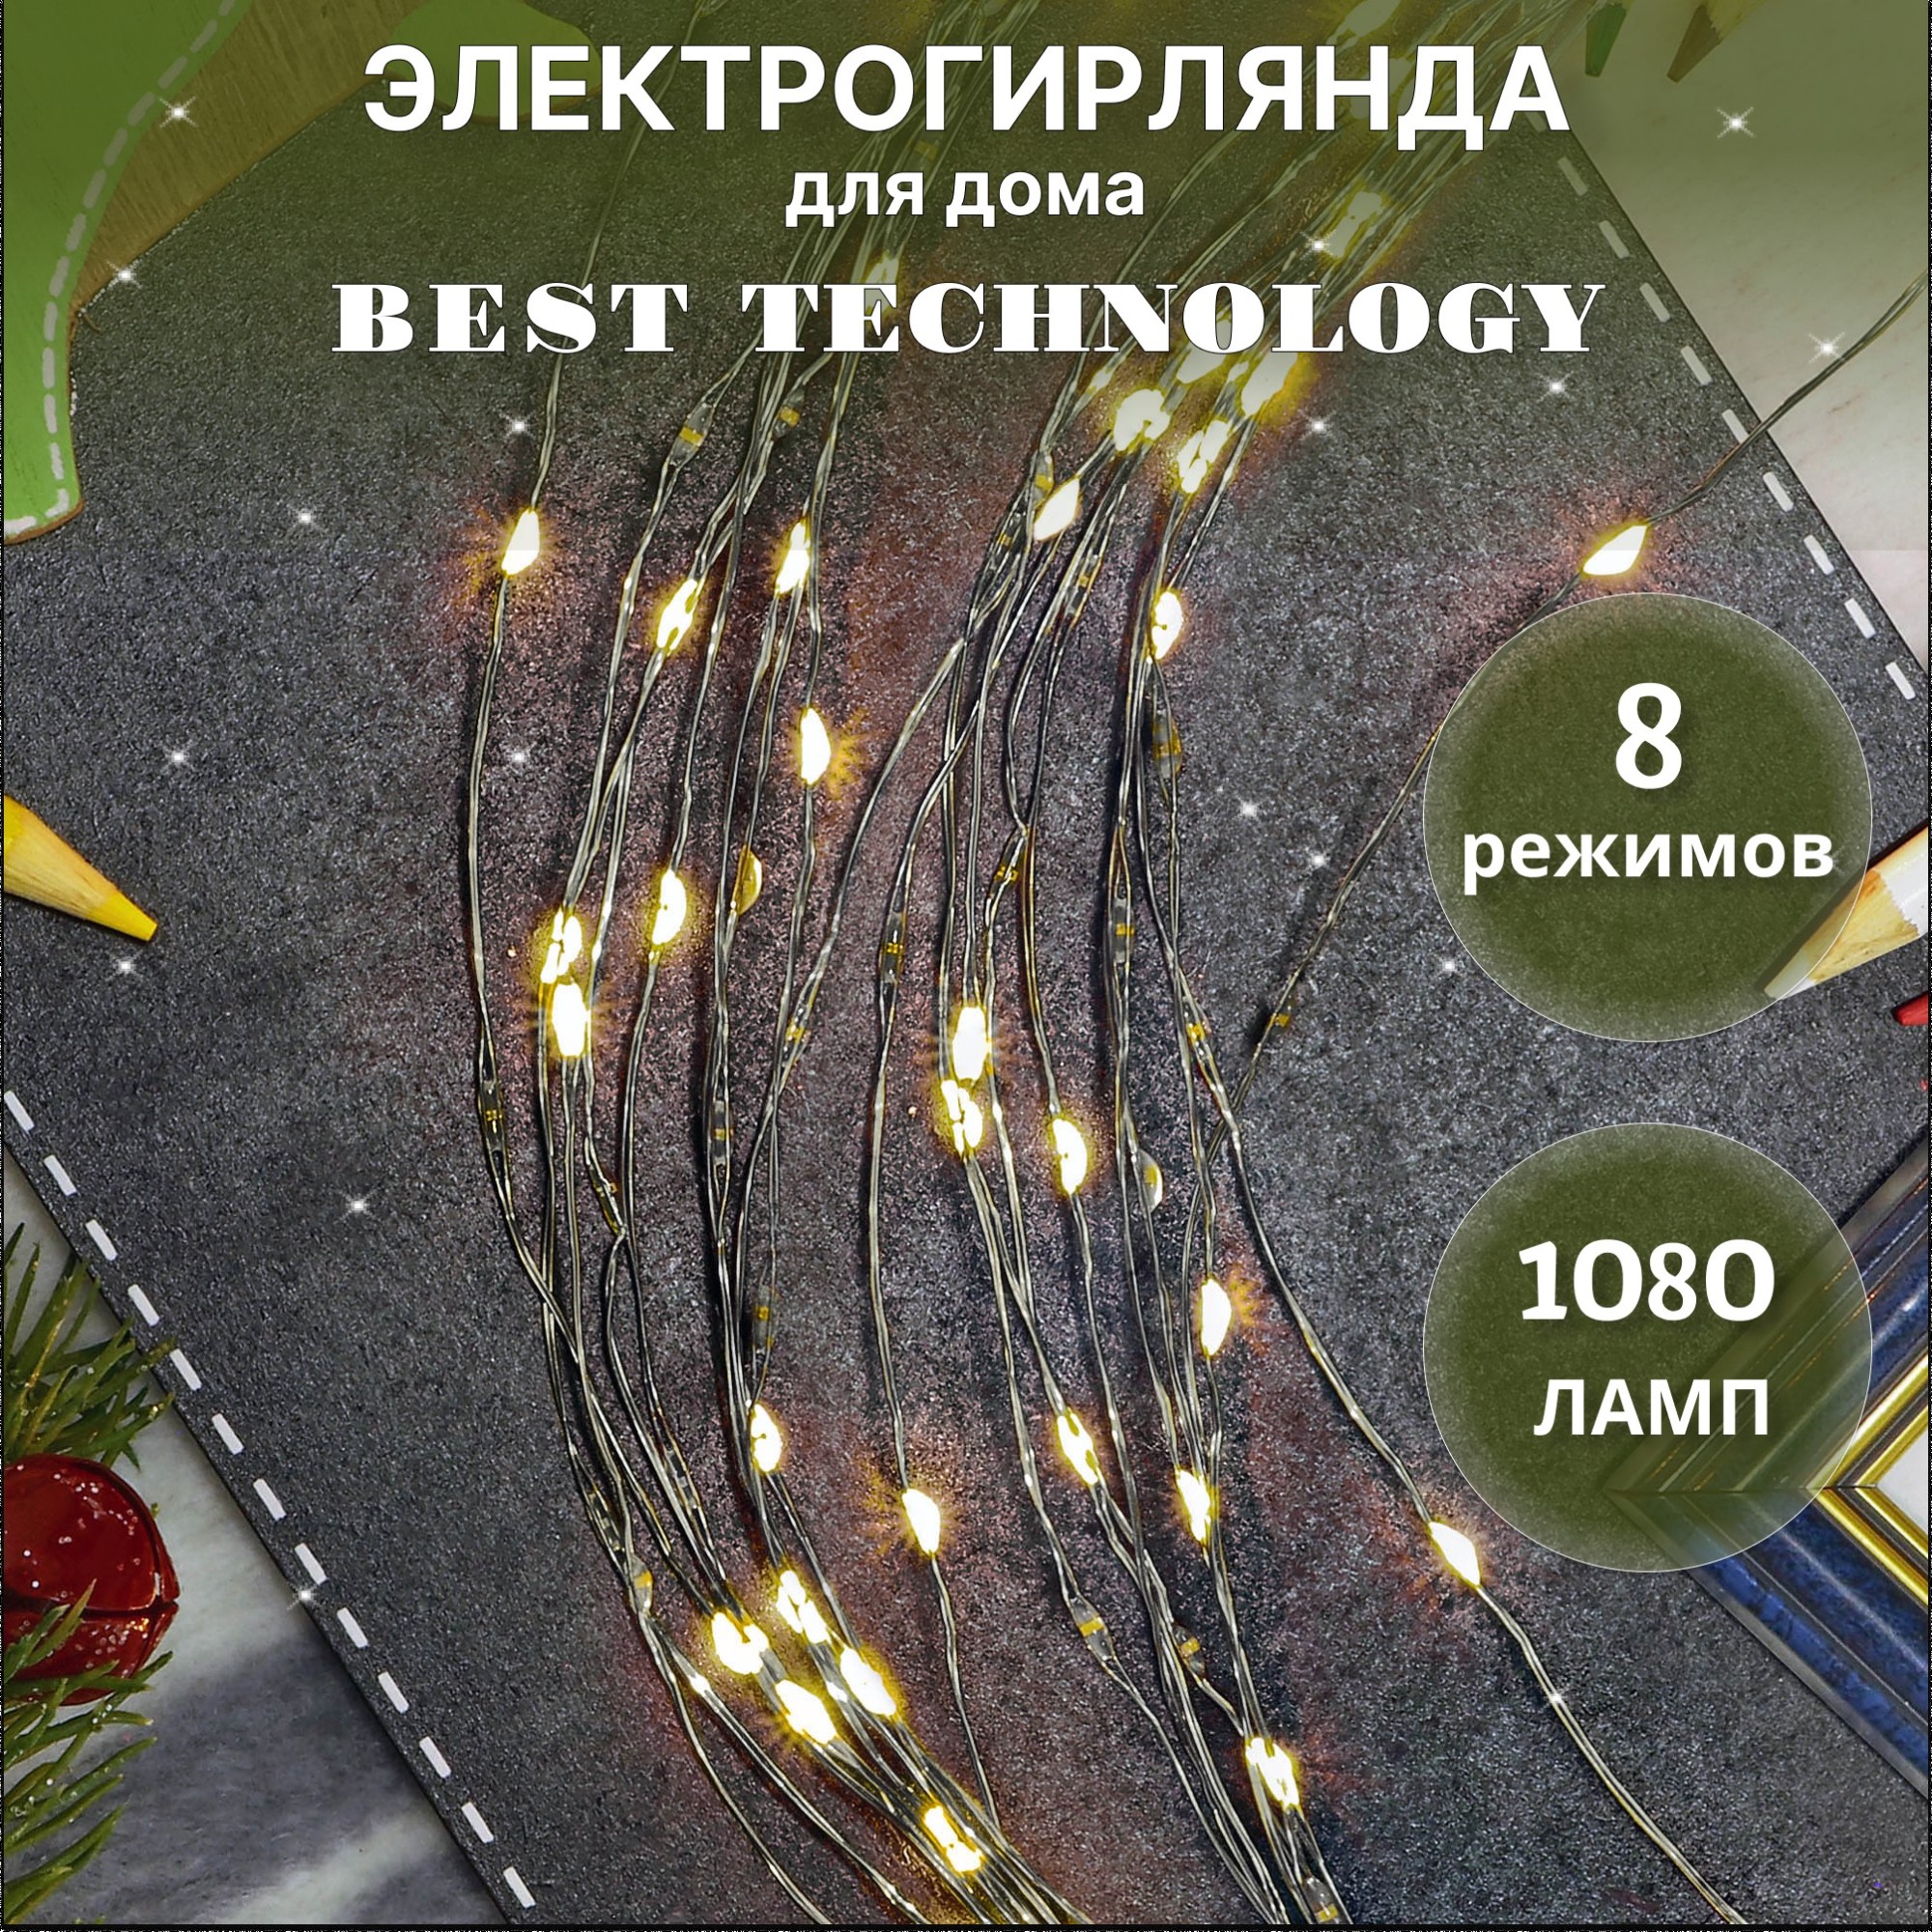 Электрогирлянда Best Technology 1080 LED 39,9 м со стартовым шнуром, цвет зеленый - фото 2